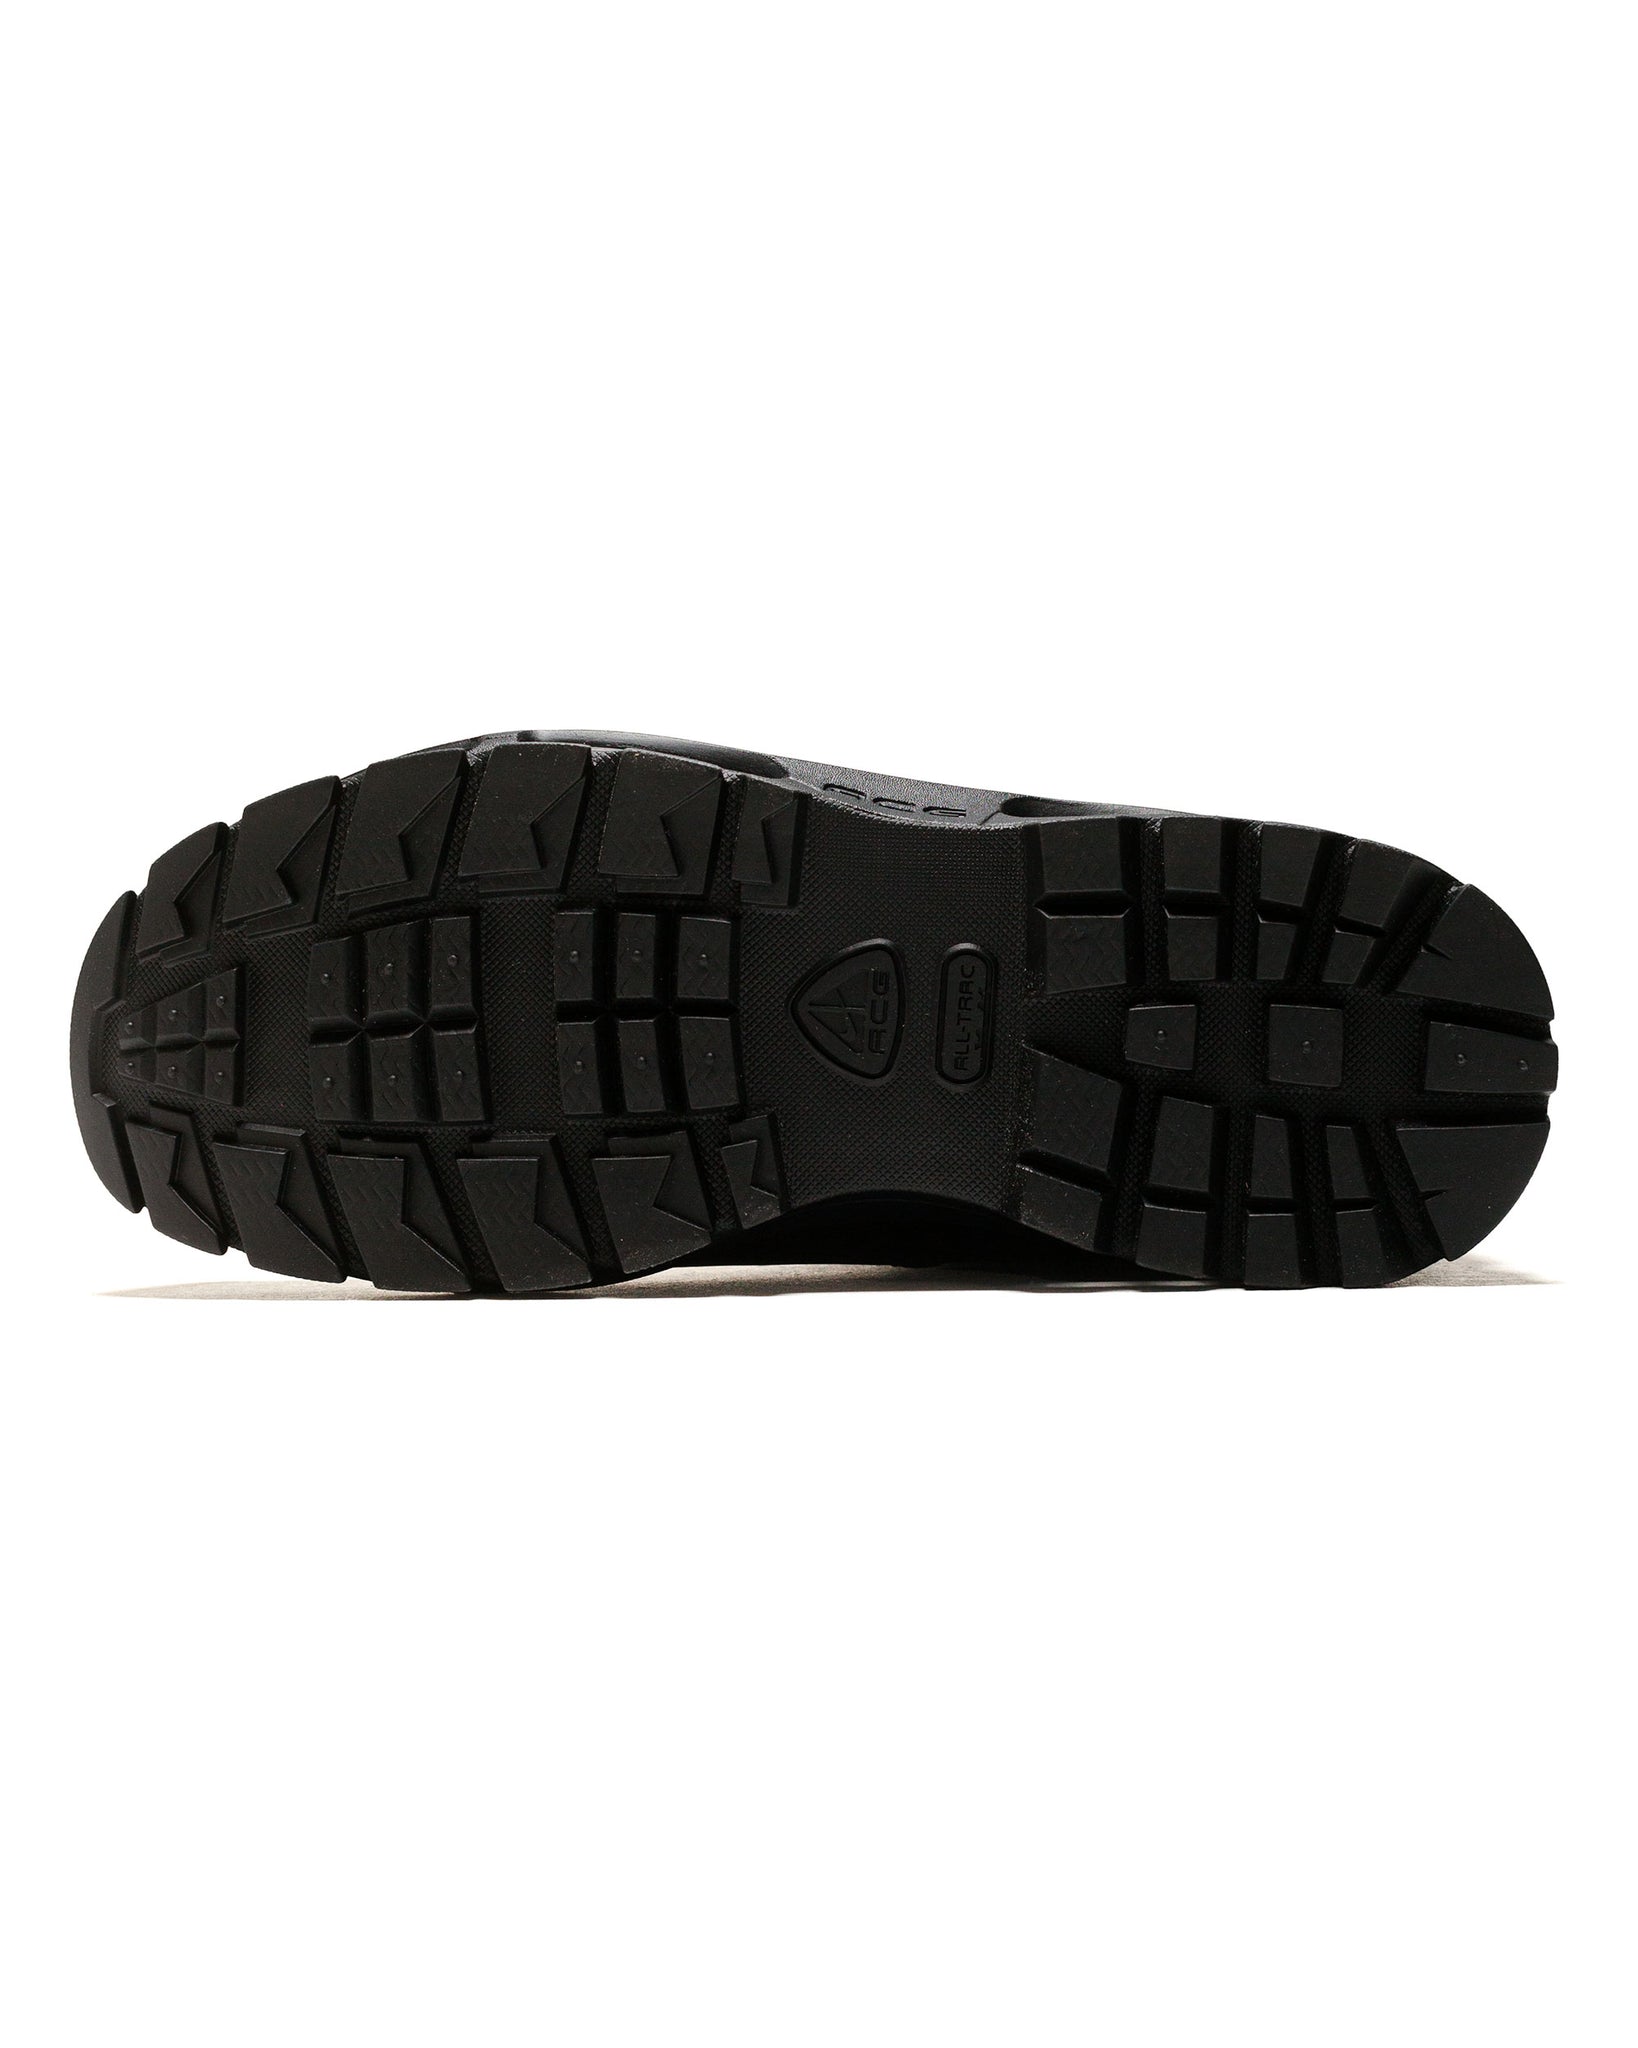 Nike ACG Air Max Goadome Black sole